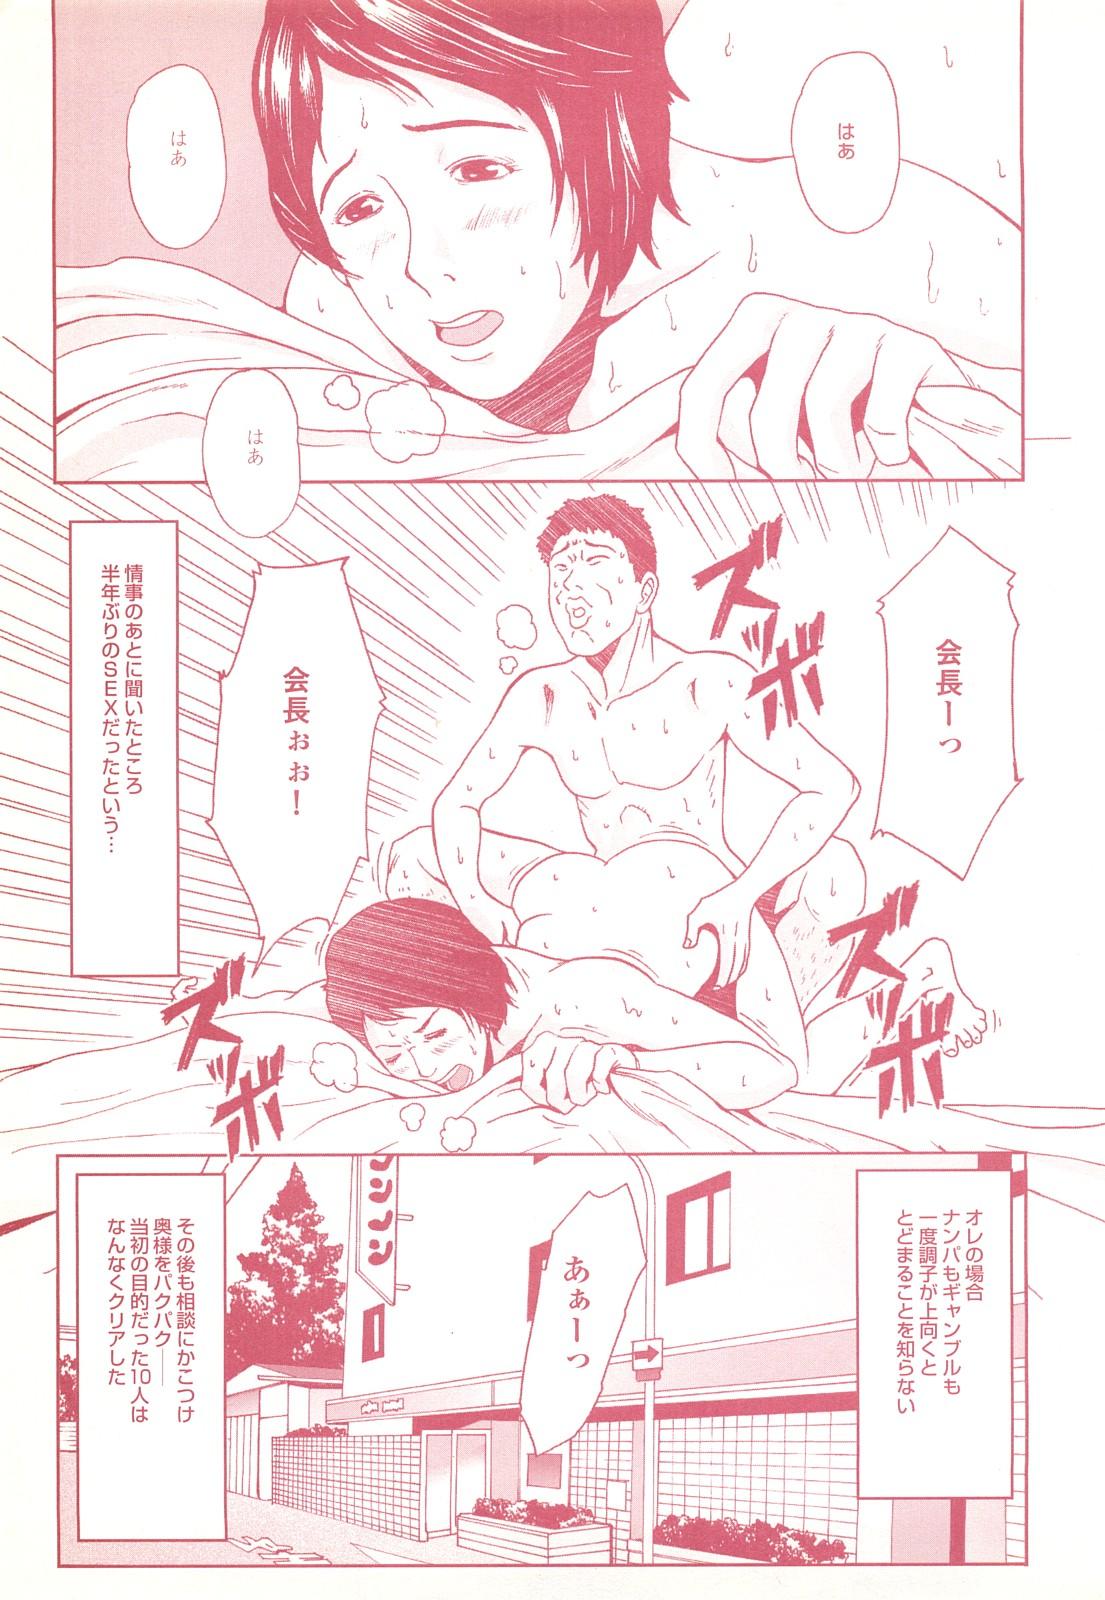 コミック裏モノJAPAN Vol.18 今井のりたつスペシャル号 118